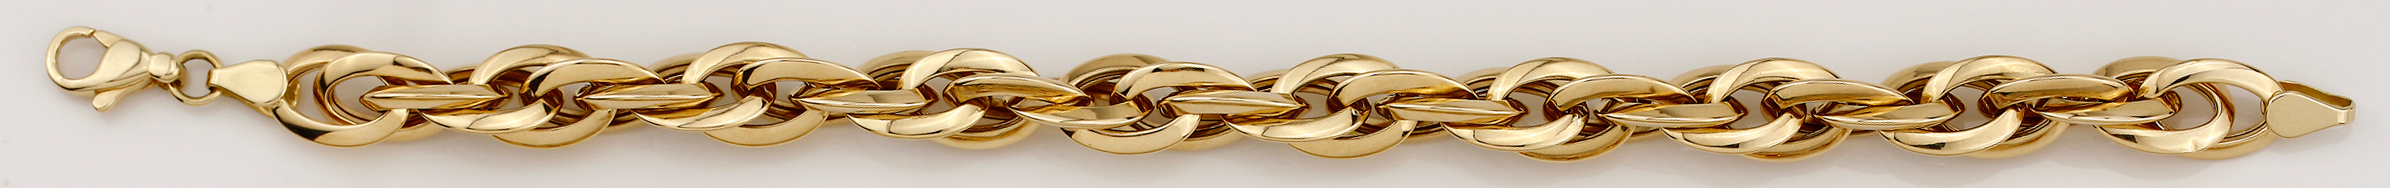 Bracelet Gelbgold 750, 19cm, 8.7mm, Doppelanker gedreht